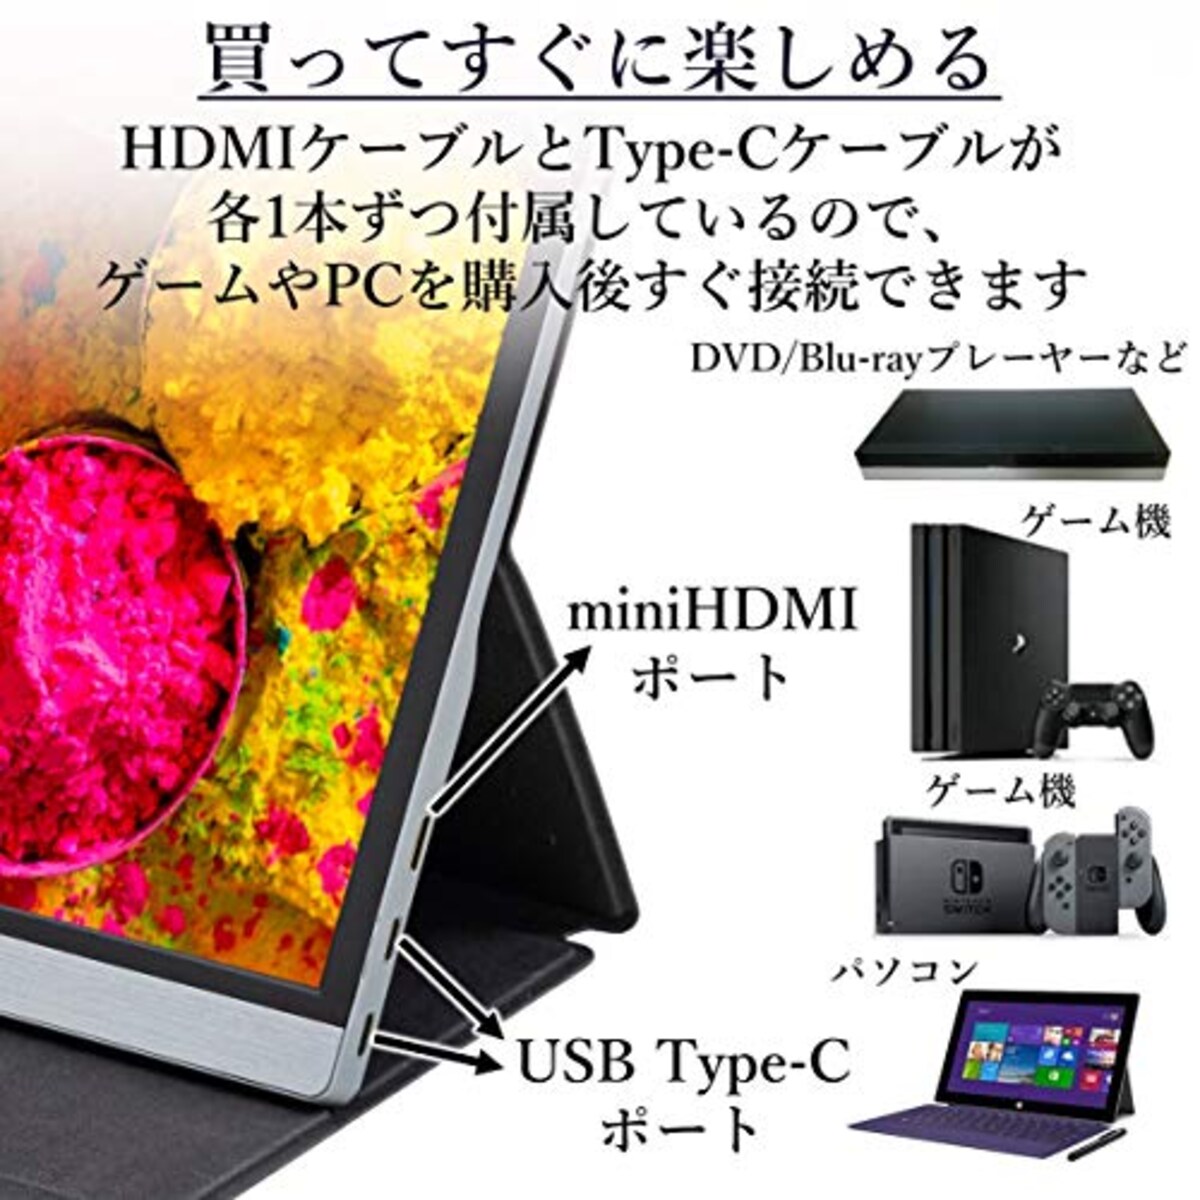  山善 モバイルモニター 15.6インチ モバイルディスプレイ 1080P 1670万色 日本設計 Type-C/HDMI-mini ブルーライト機能 IPSパネル ゲームモード搭載 (PS4 / XBOX/Switch/PC/タブレット 対応) 内蔵スピーカー搭載 薄型 軽量 QMM-156R画像6 